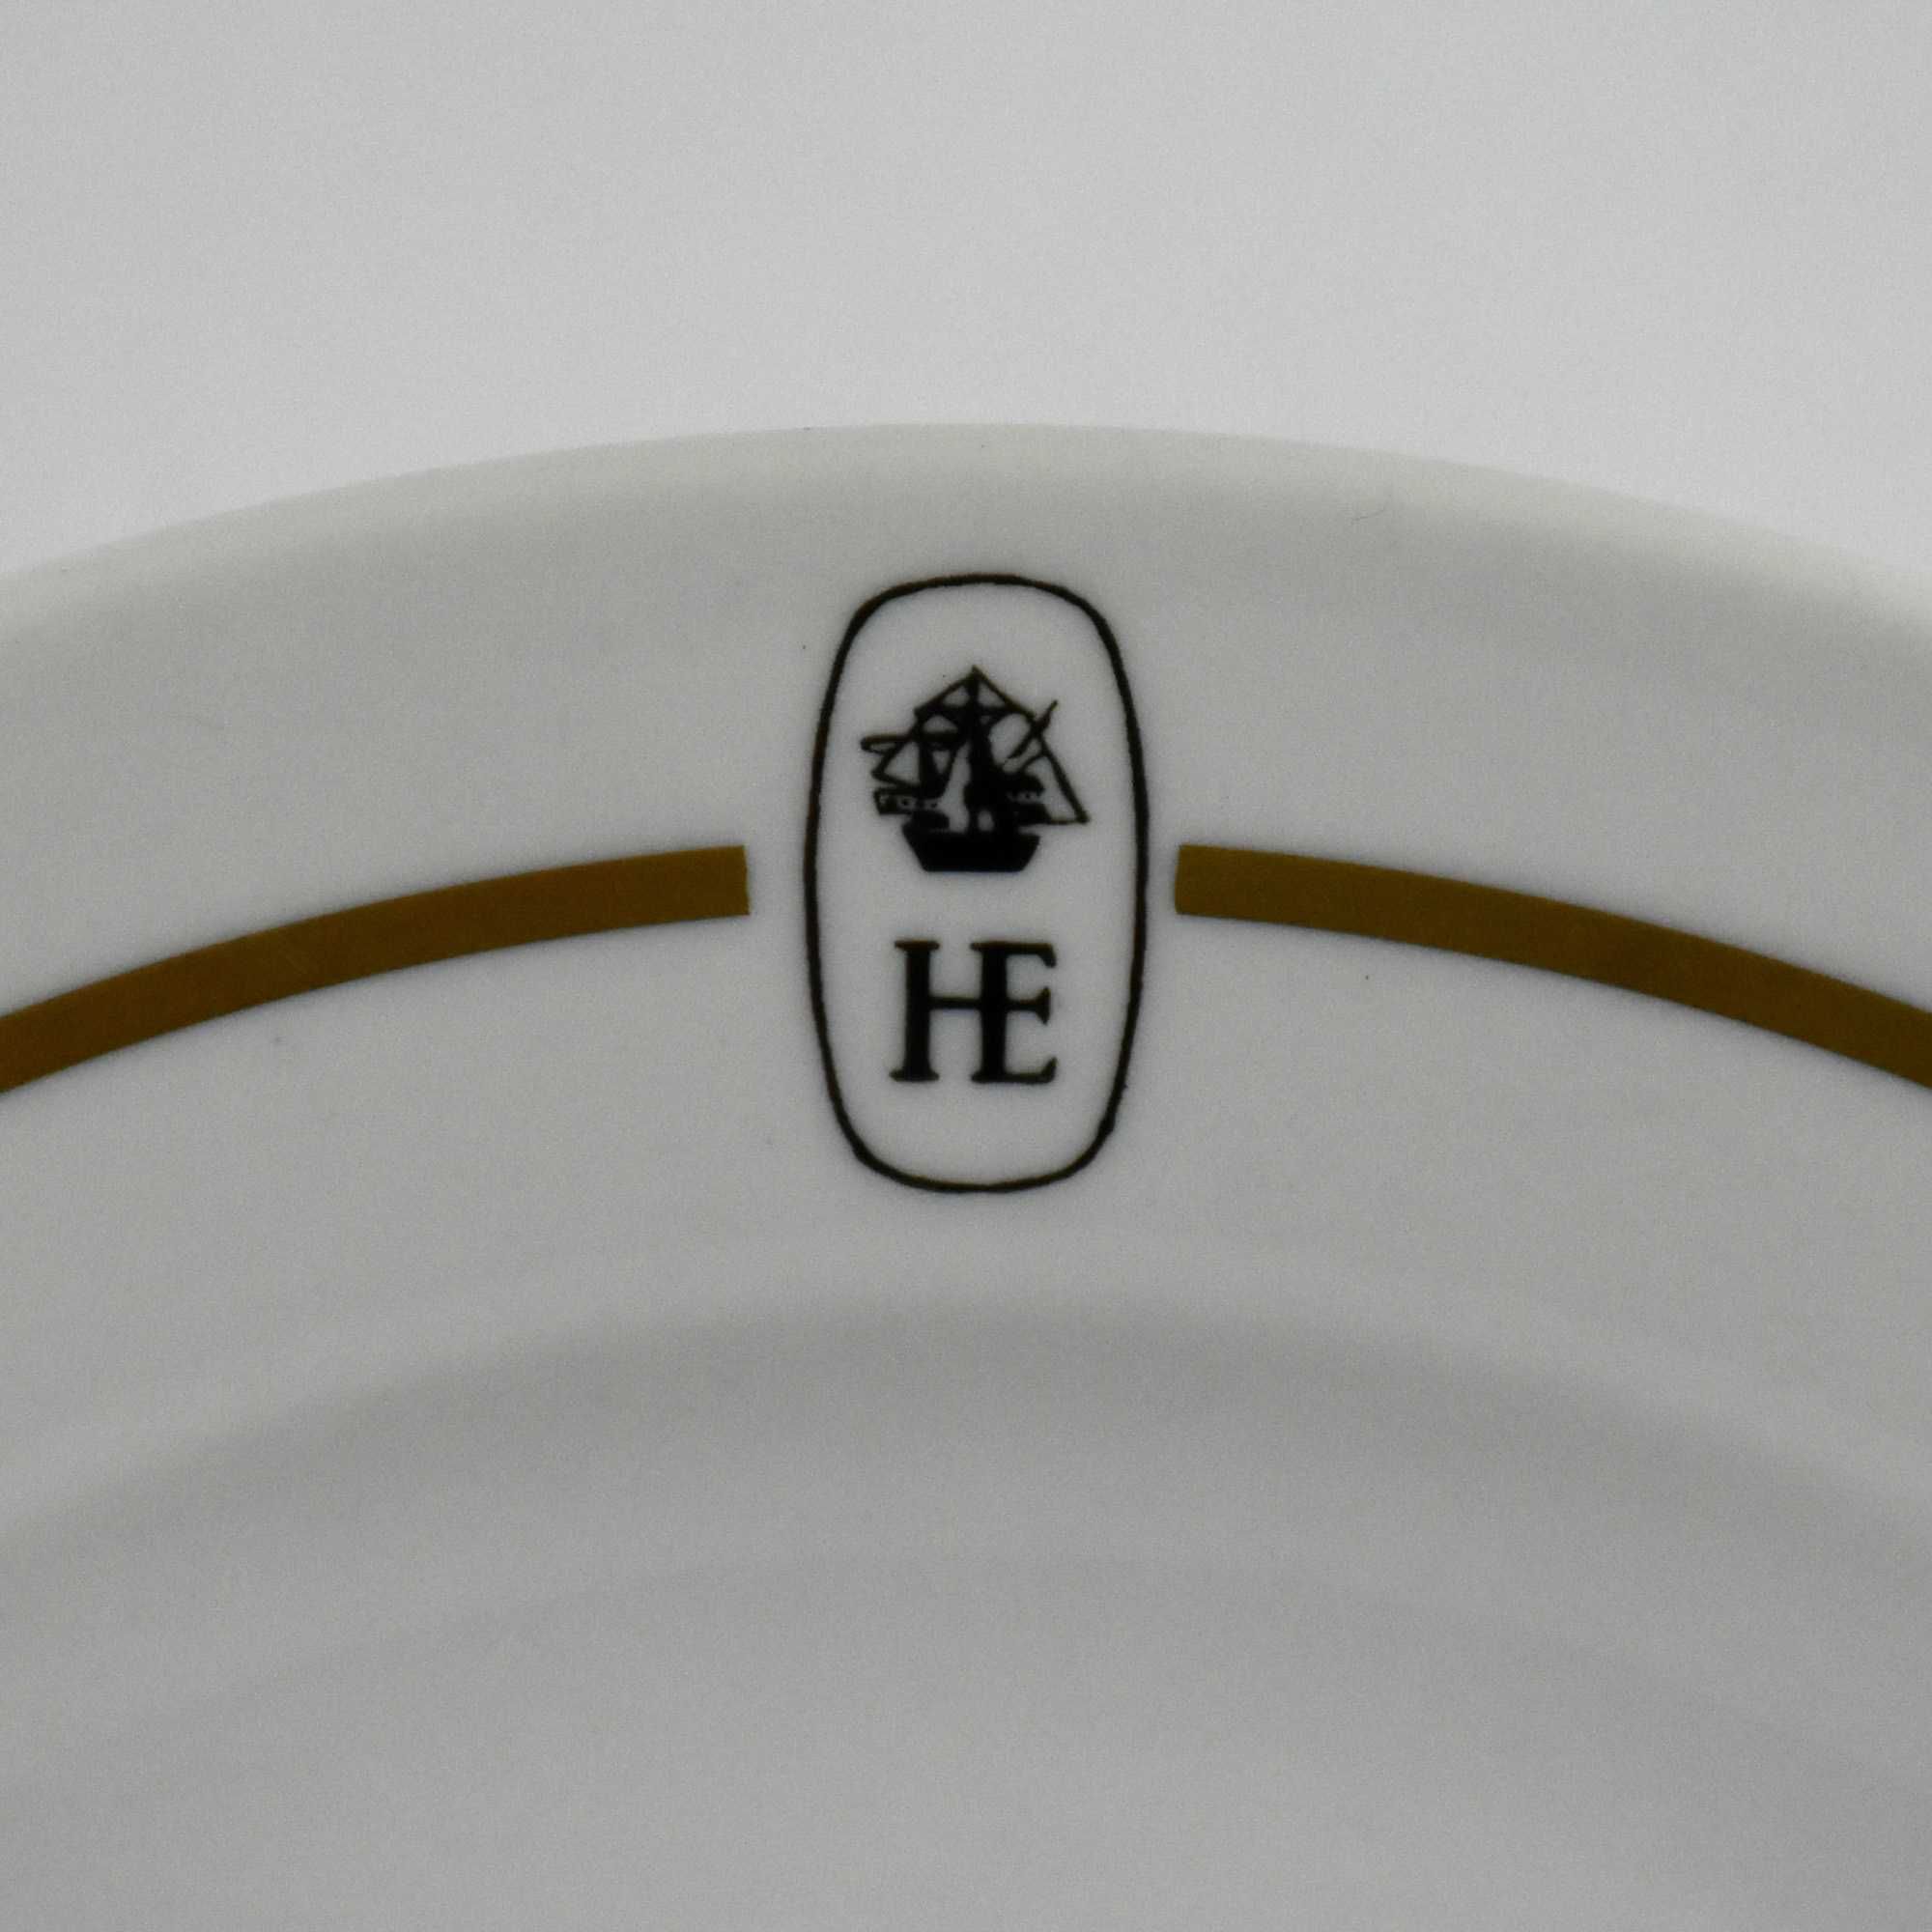 Prato porcelana Artibus com publicidade do hotel “HE”